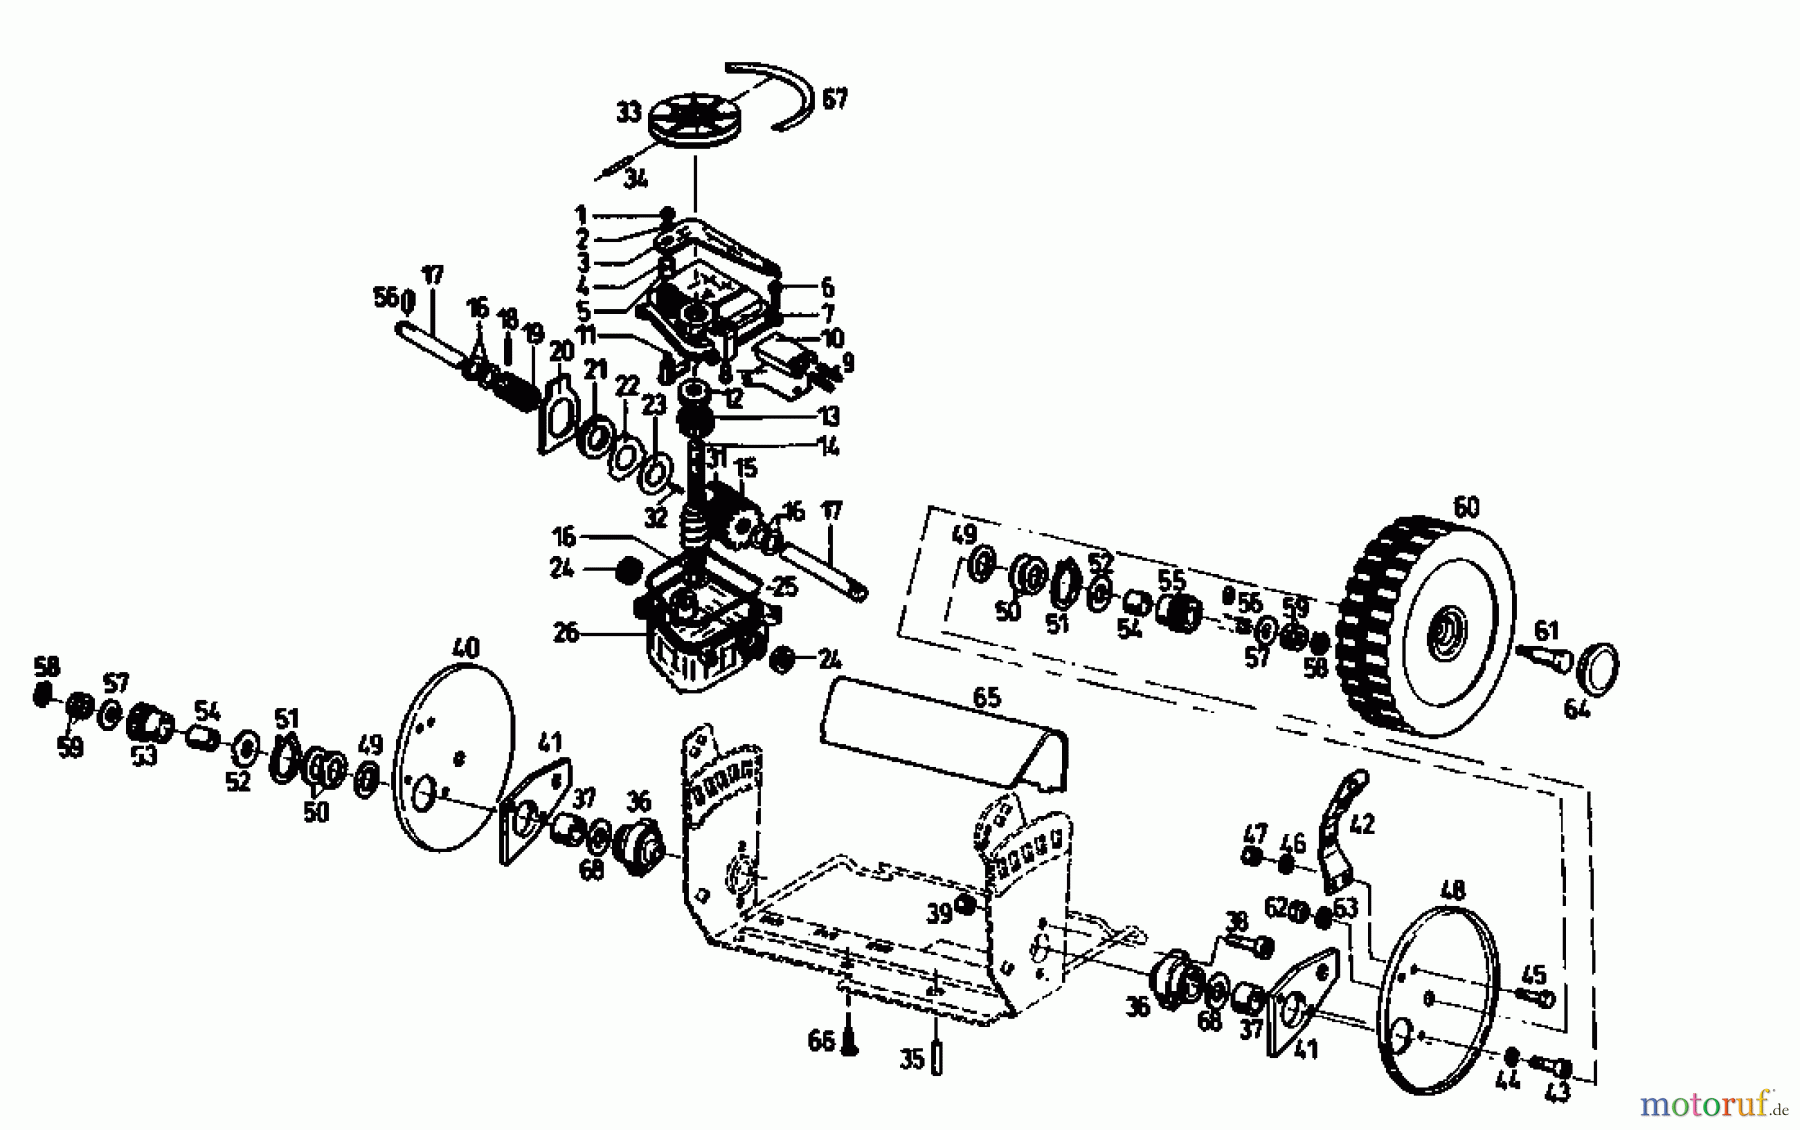  Gutbrod Motormäher mit Antrieb TURBO HBSRE 04011.04  (1993) Getriebe